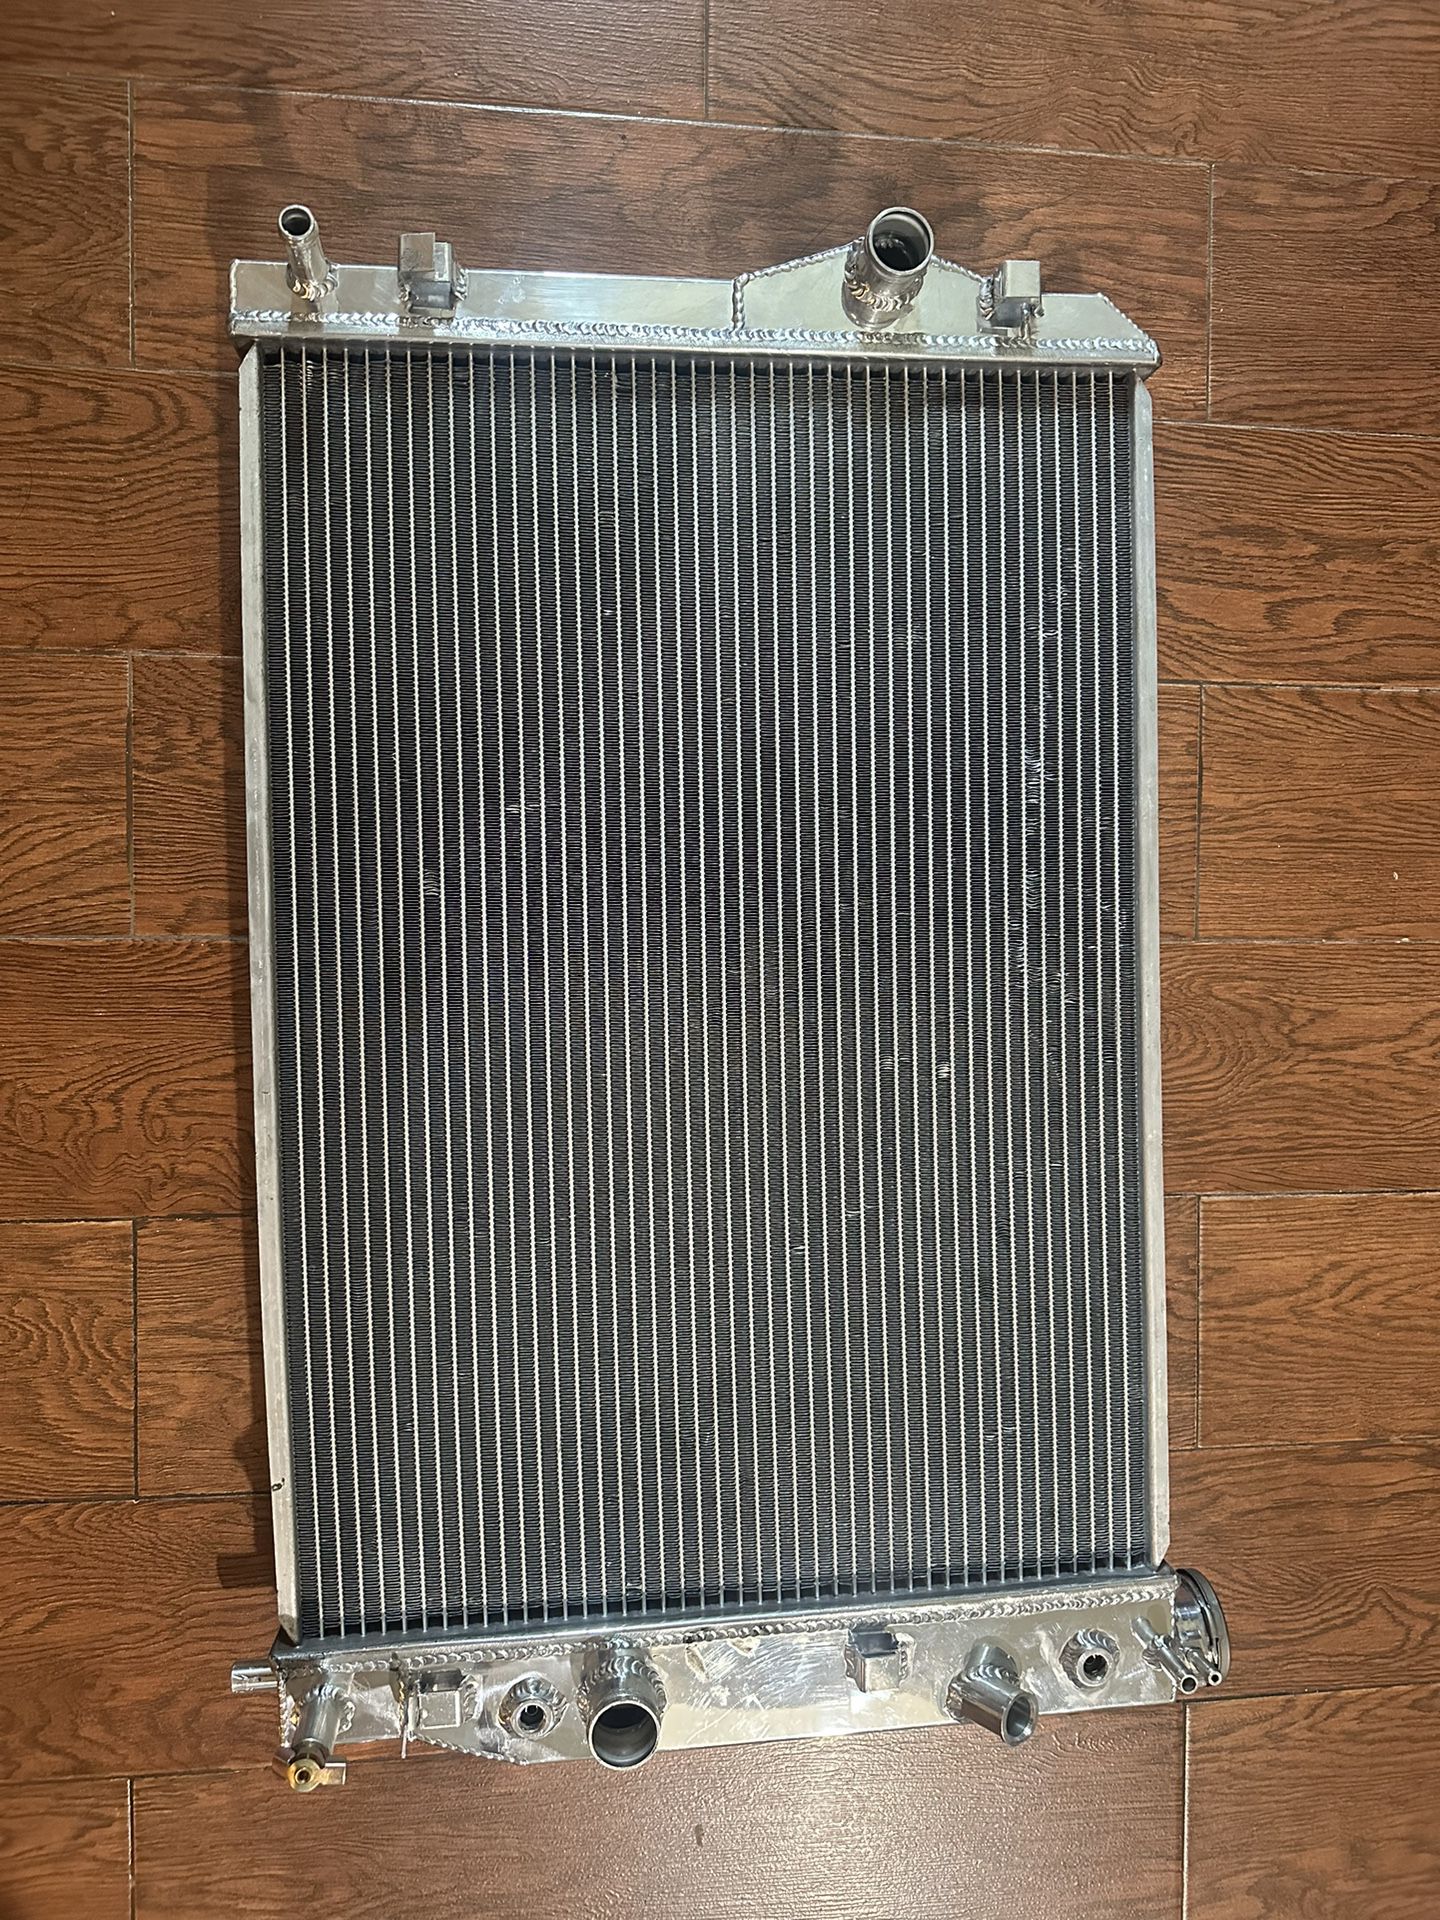 Frostbite Aluminum Radiator 